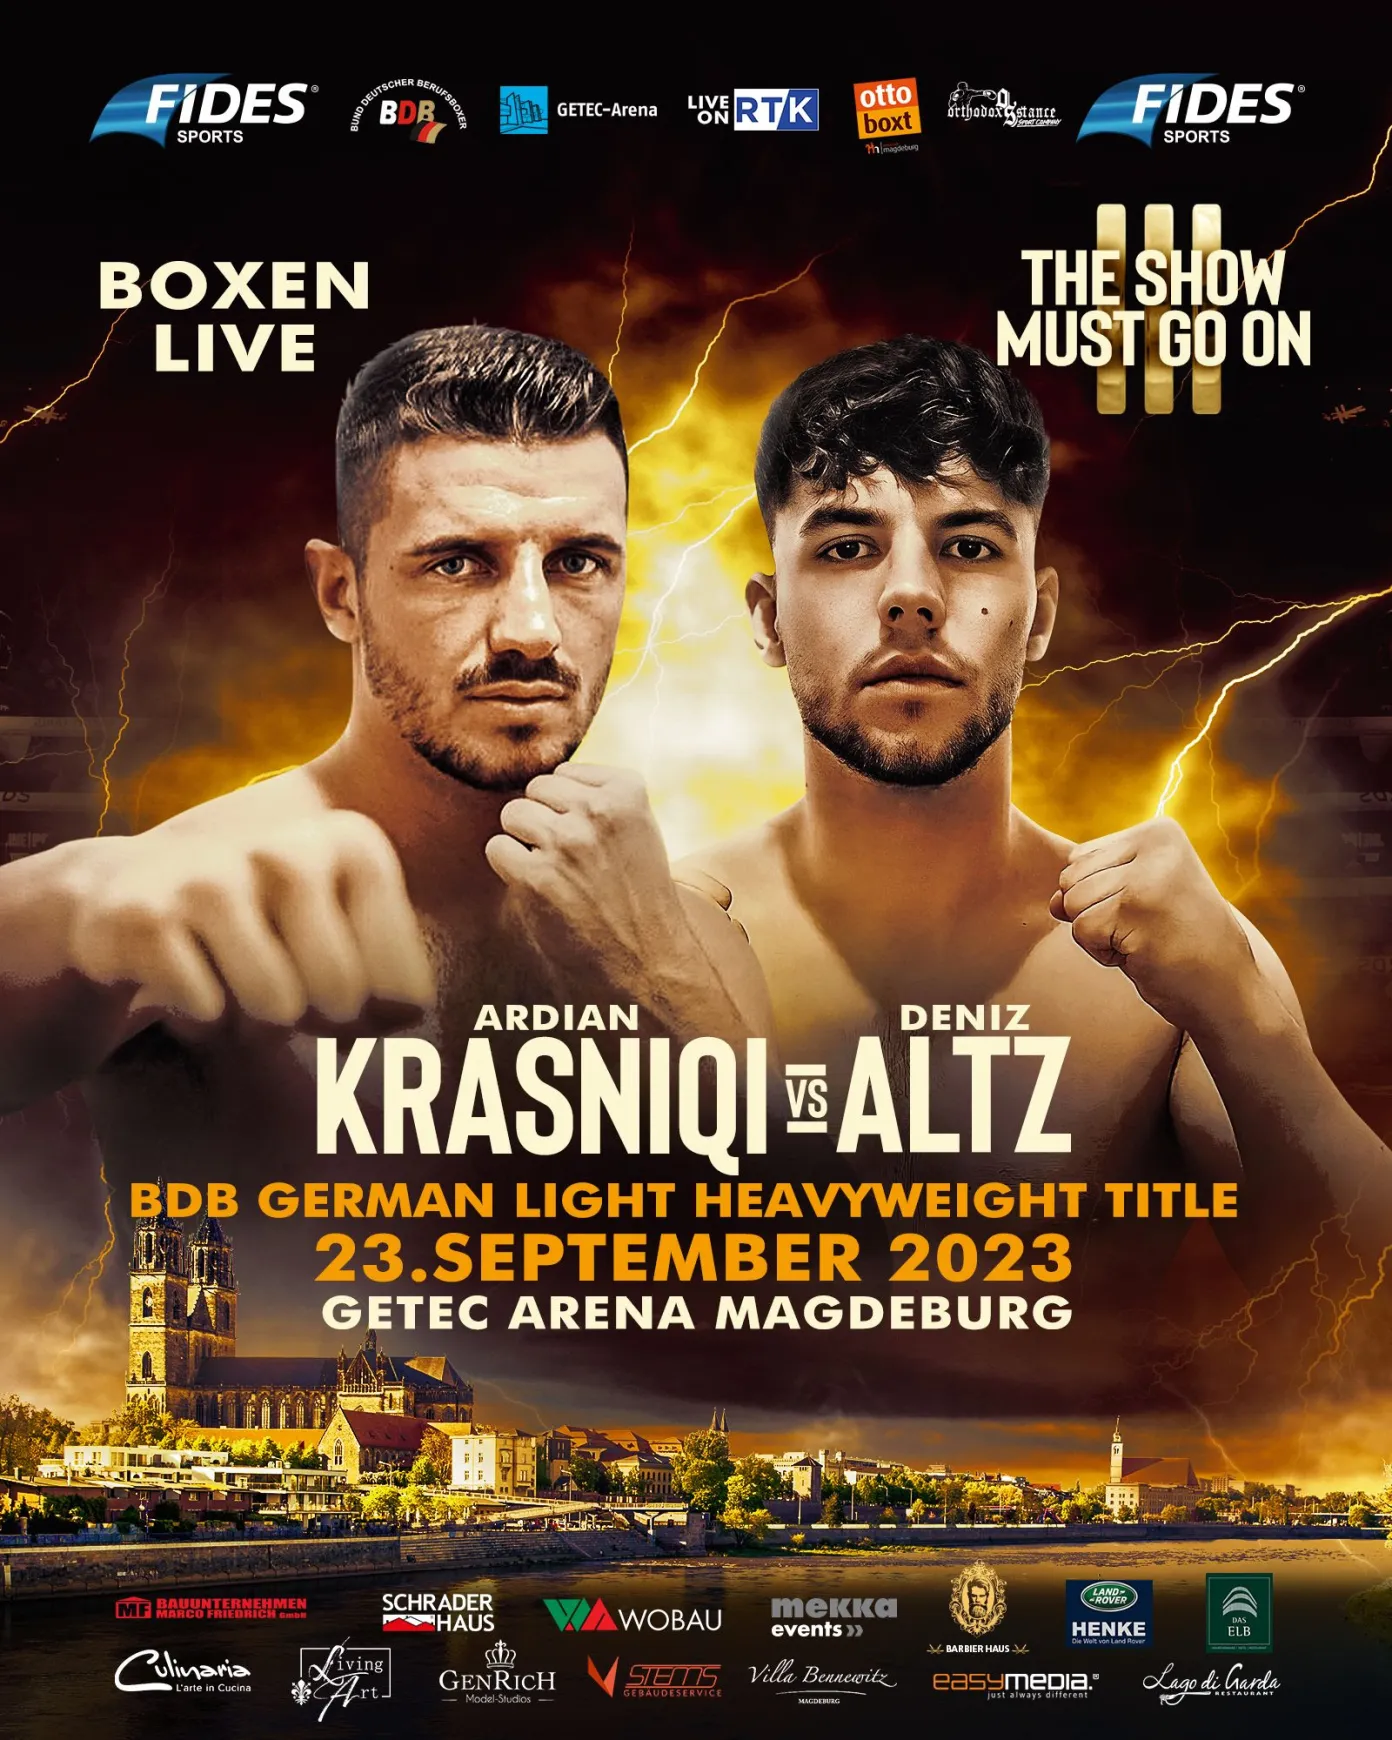 Plakat Boxevent Fides Sports in Magdeburg mit zwei Boxern